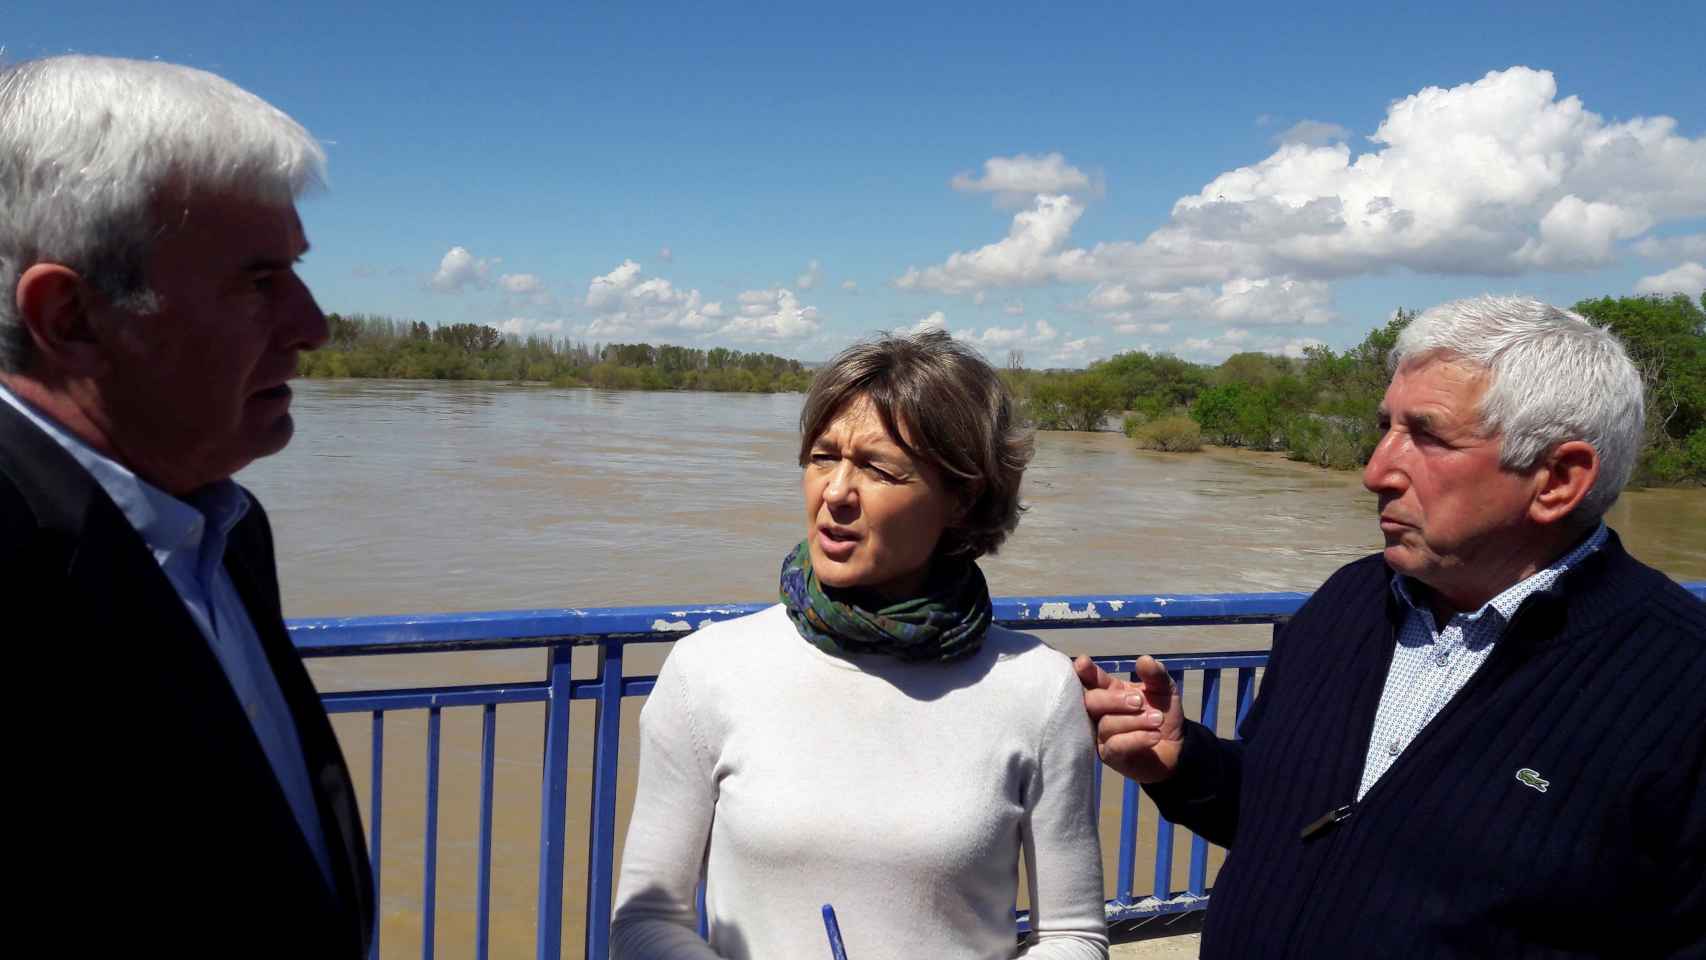 Isabel García Tejerina, ministra de Agricultura y Pesca, Alimentación y Medio Ambiente.